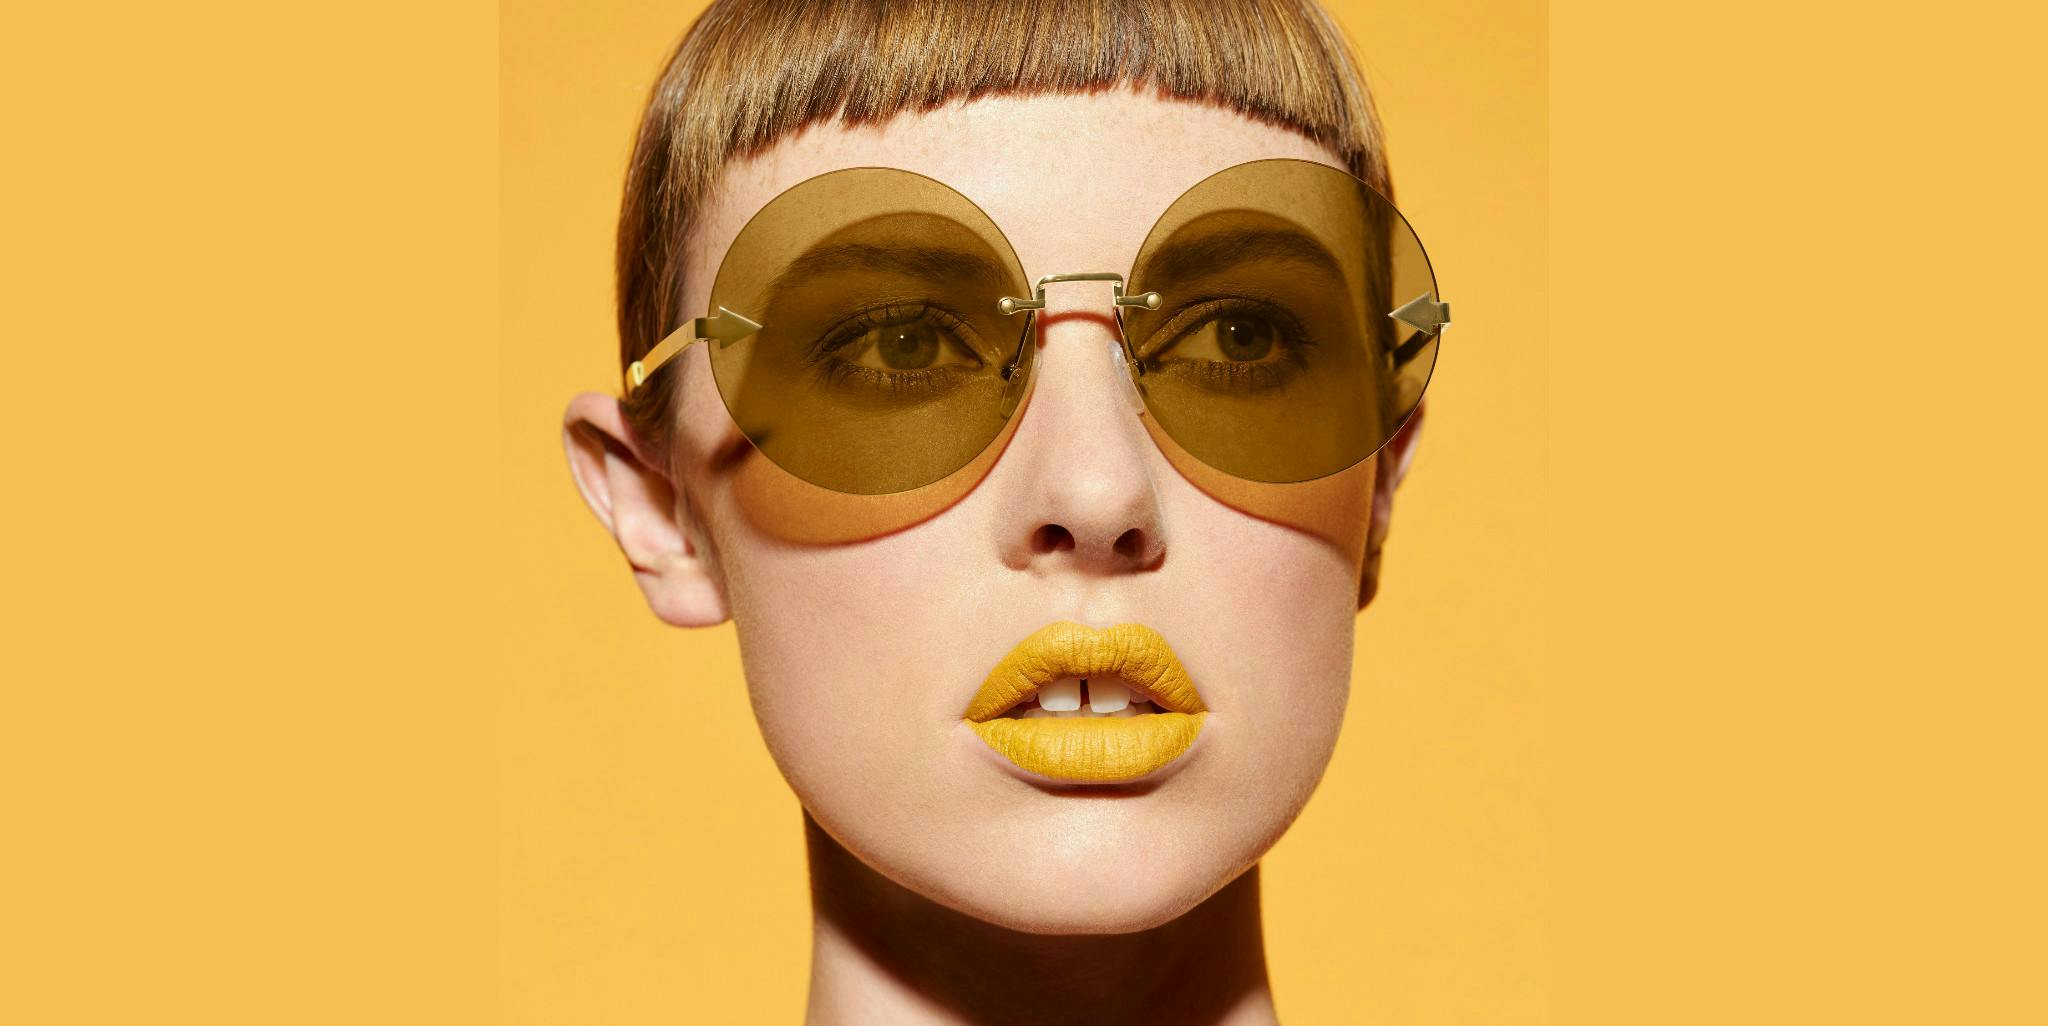 glasses accessories accessory person human face sunglasses